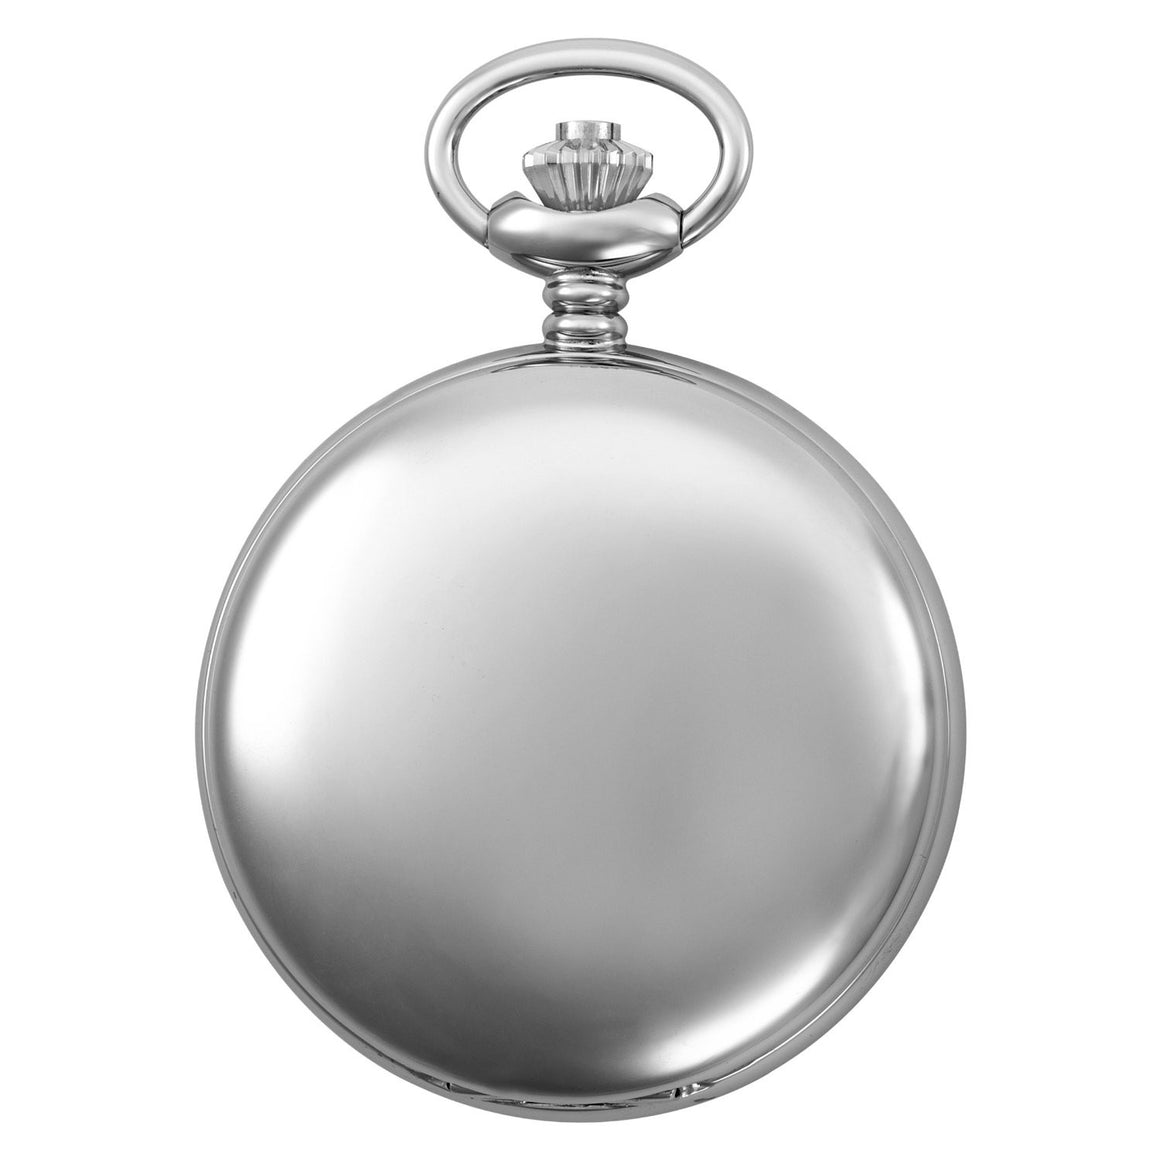 Gotham Men's Silver-Tone Black Dial Covered Quartz Pocket Watch # GWC15042SB - Gotham Watch